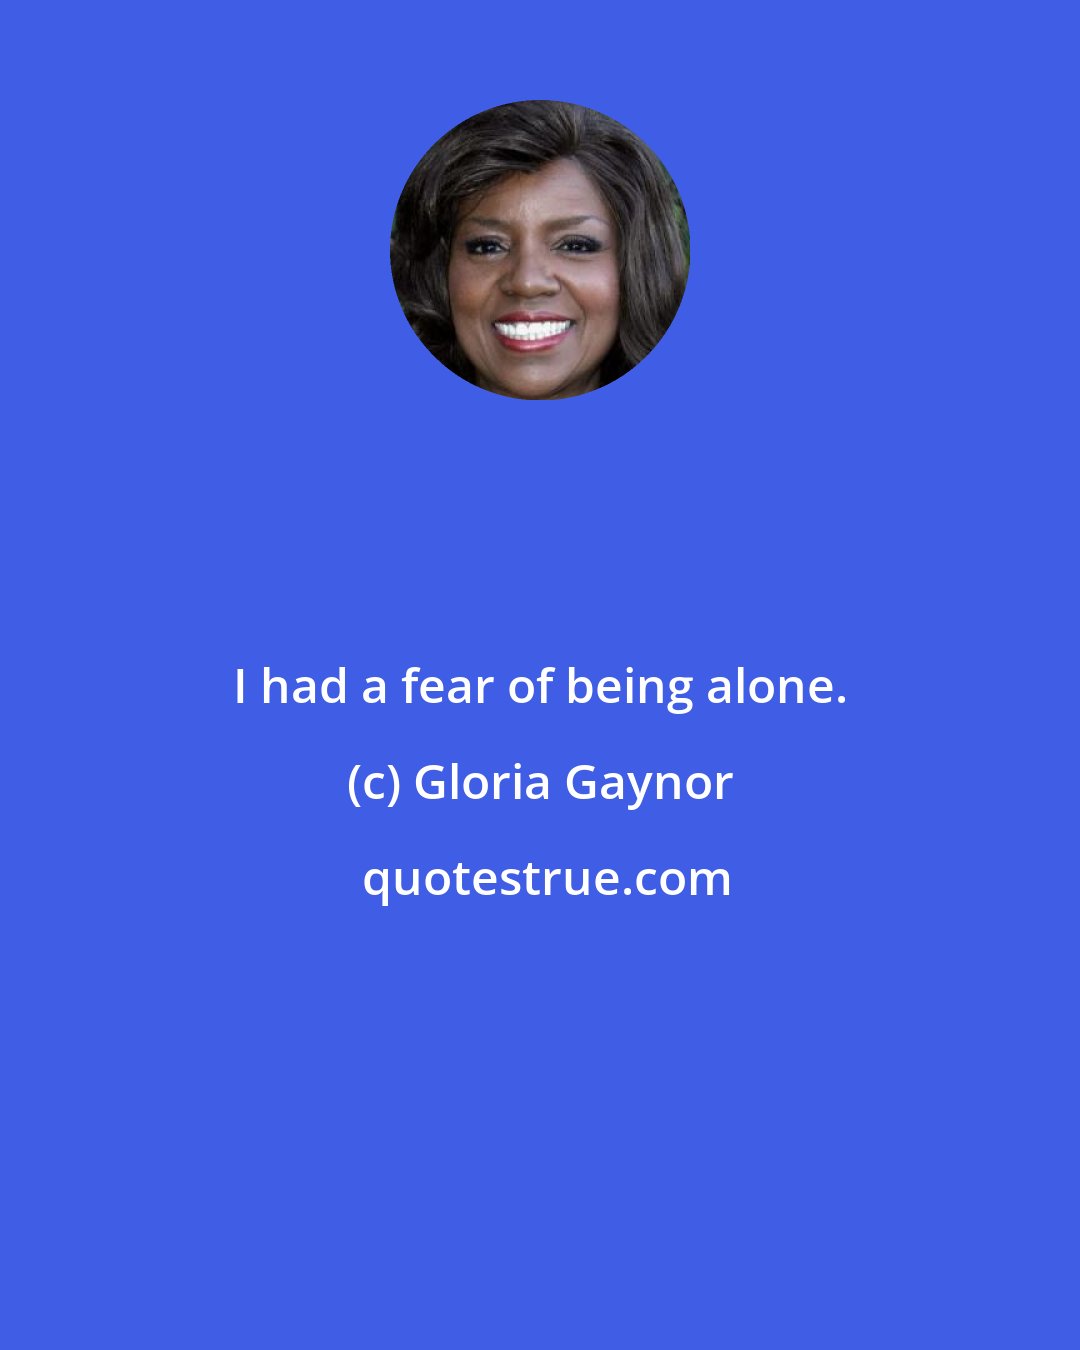 Gloria Gaynor: I had a fear of being alone.